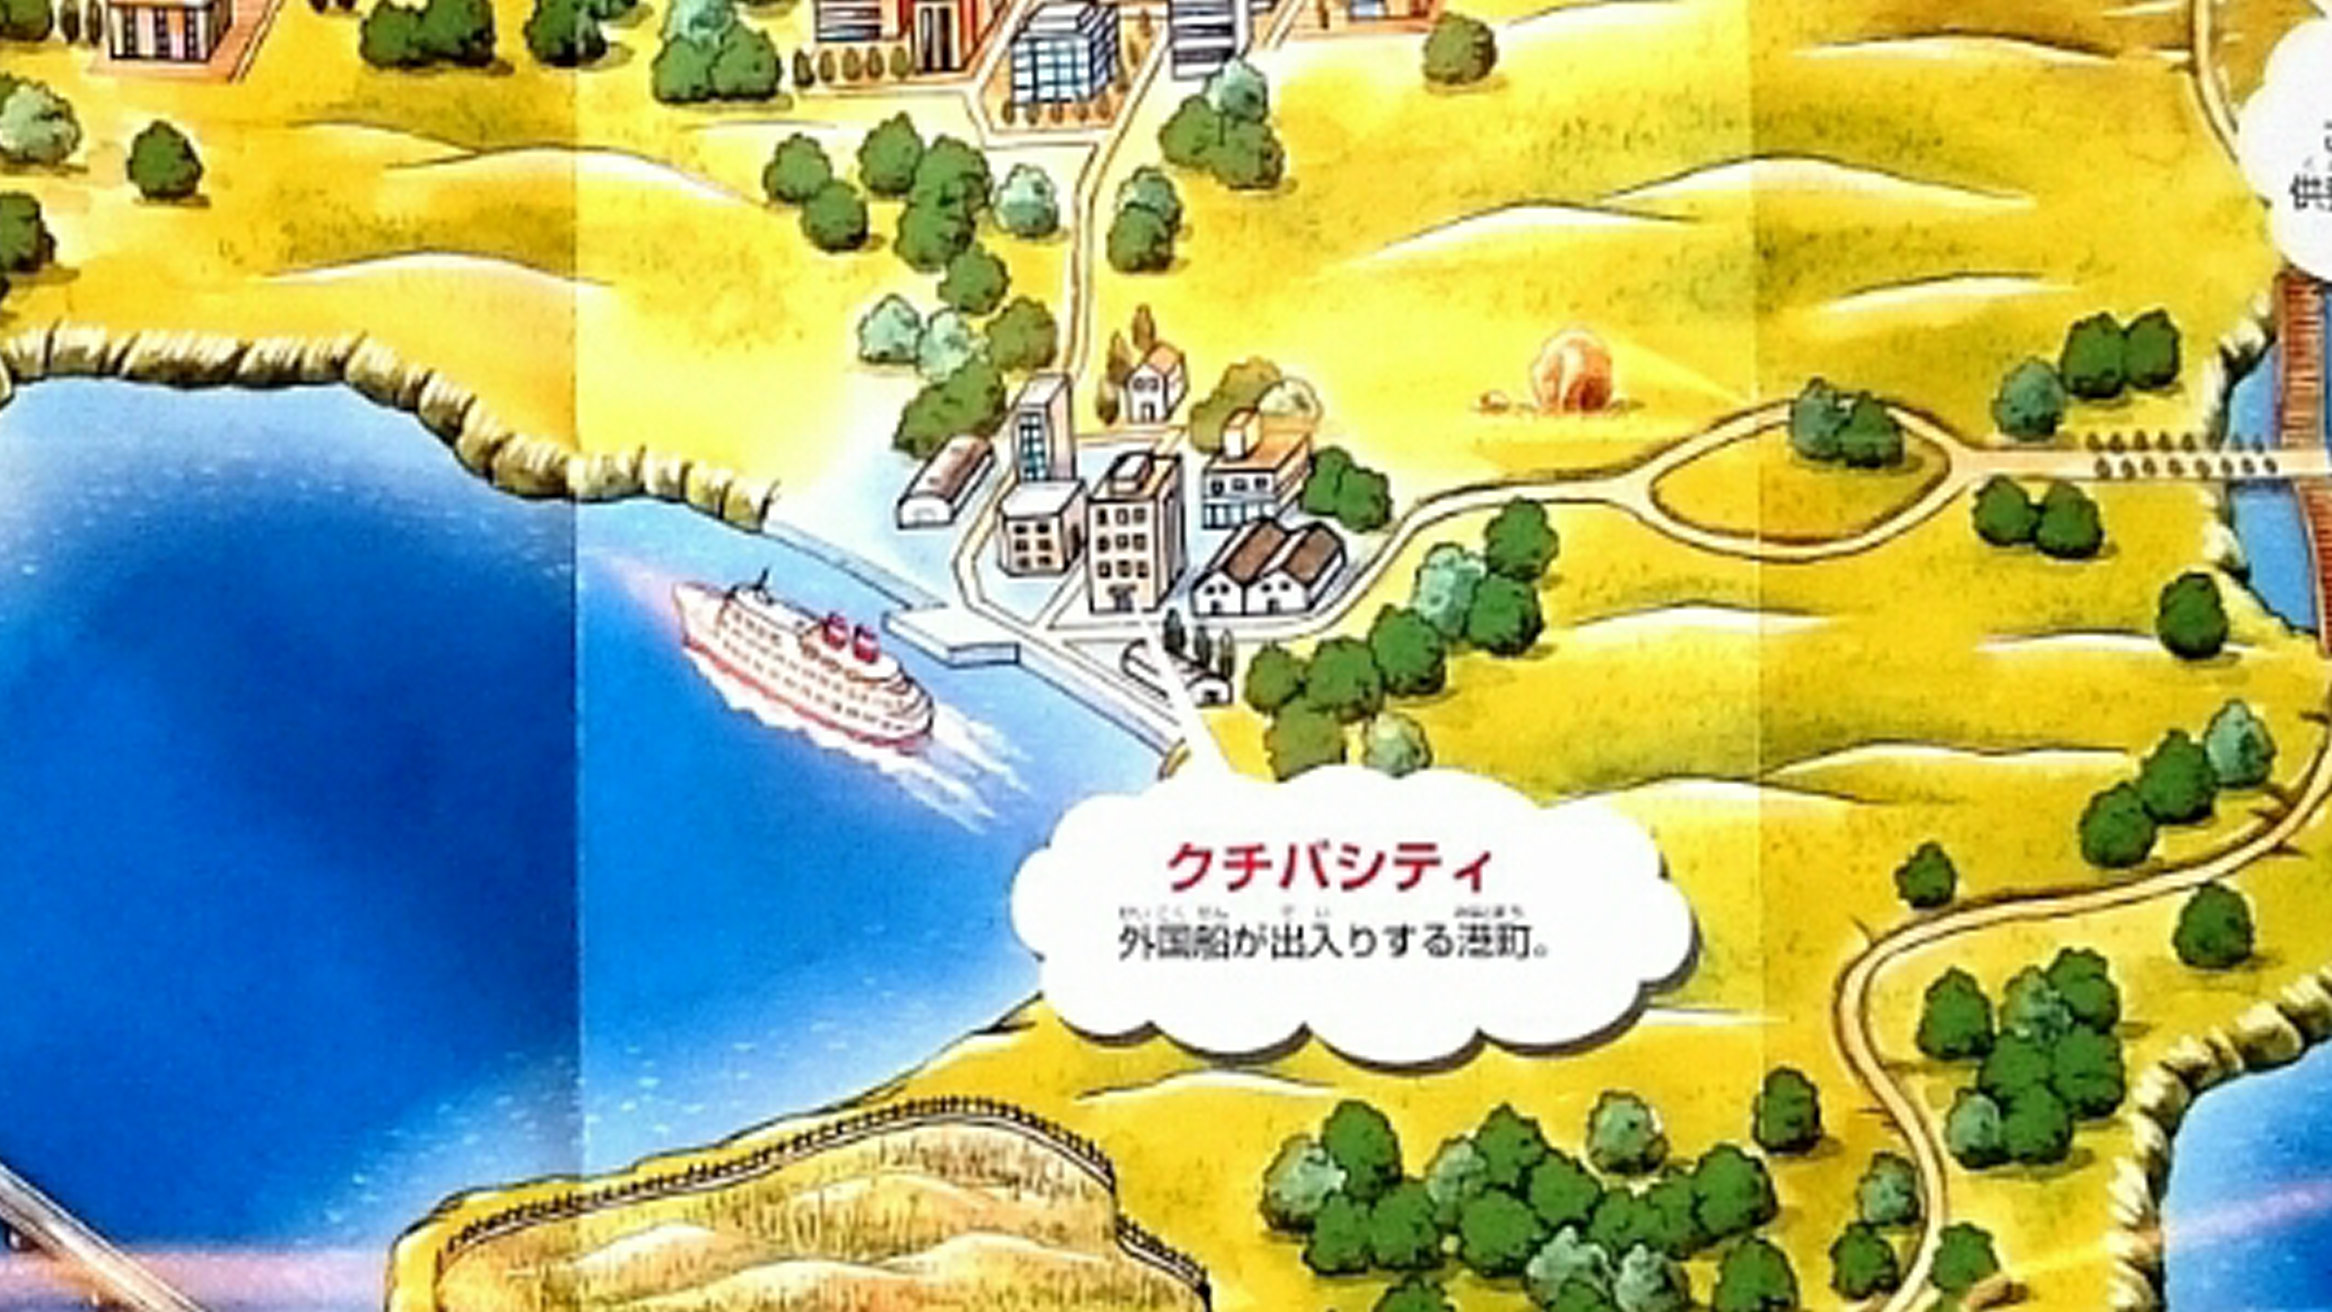 ポケモン赤緑、クチバシティのモデル横浜。地図では千葉